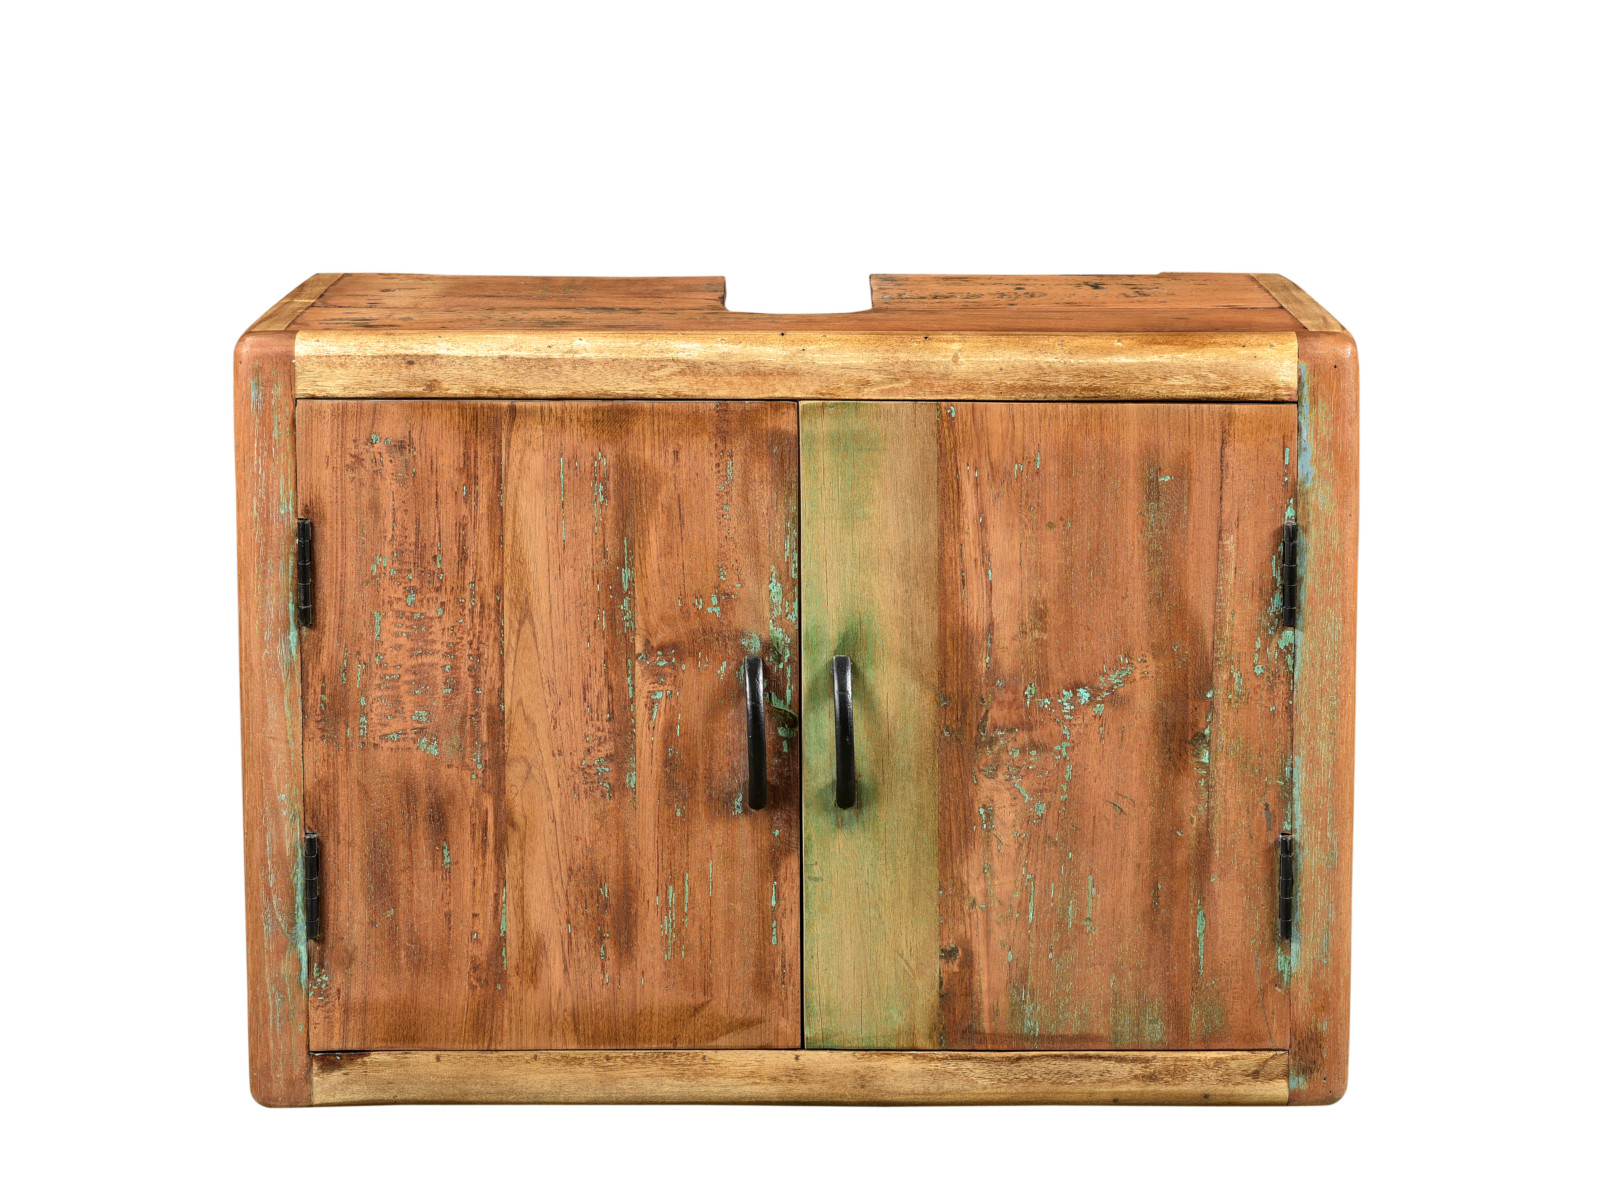 Barevná skřínka do koupelny Color II z mangového dřeva - VÝPRODEJ  Koupelnové skříňky MH263X